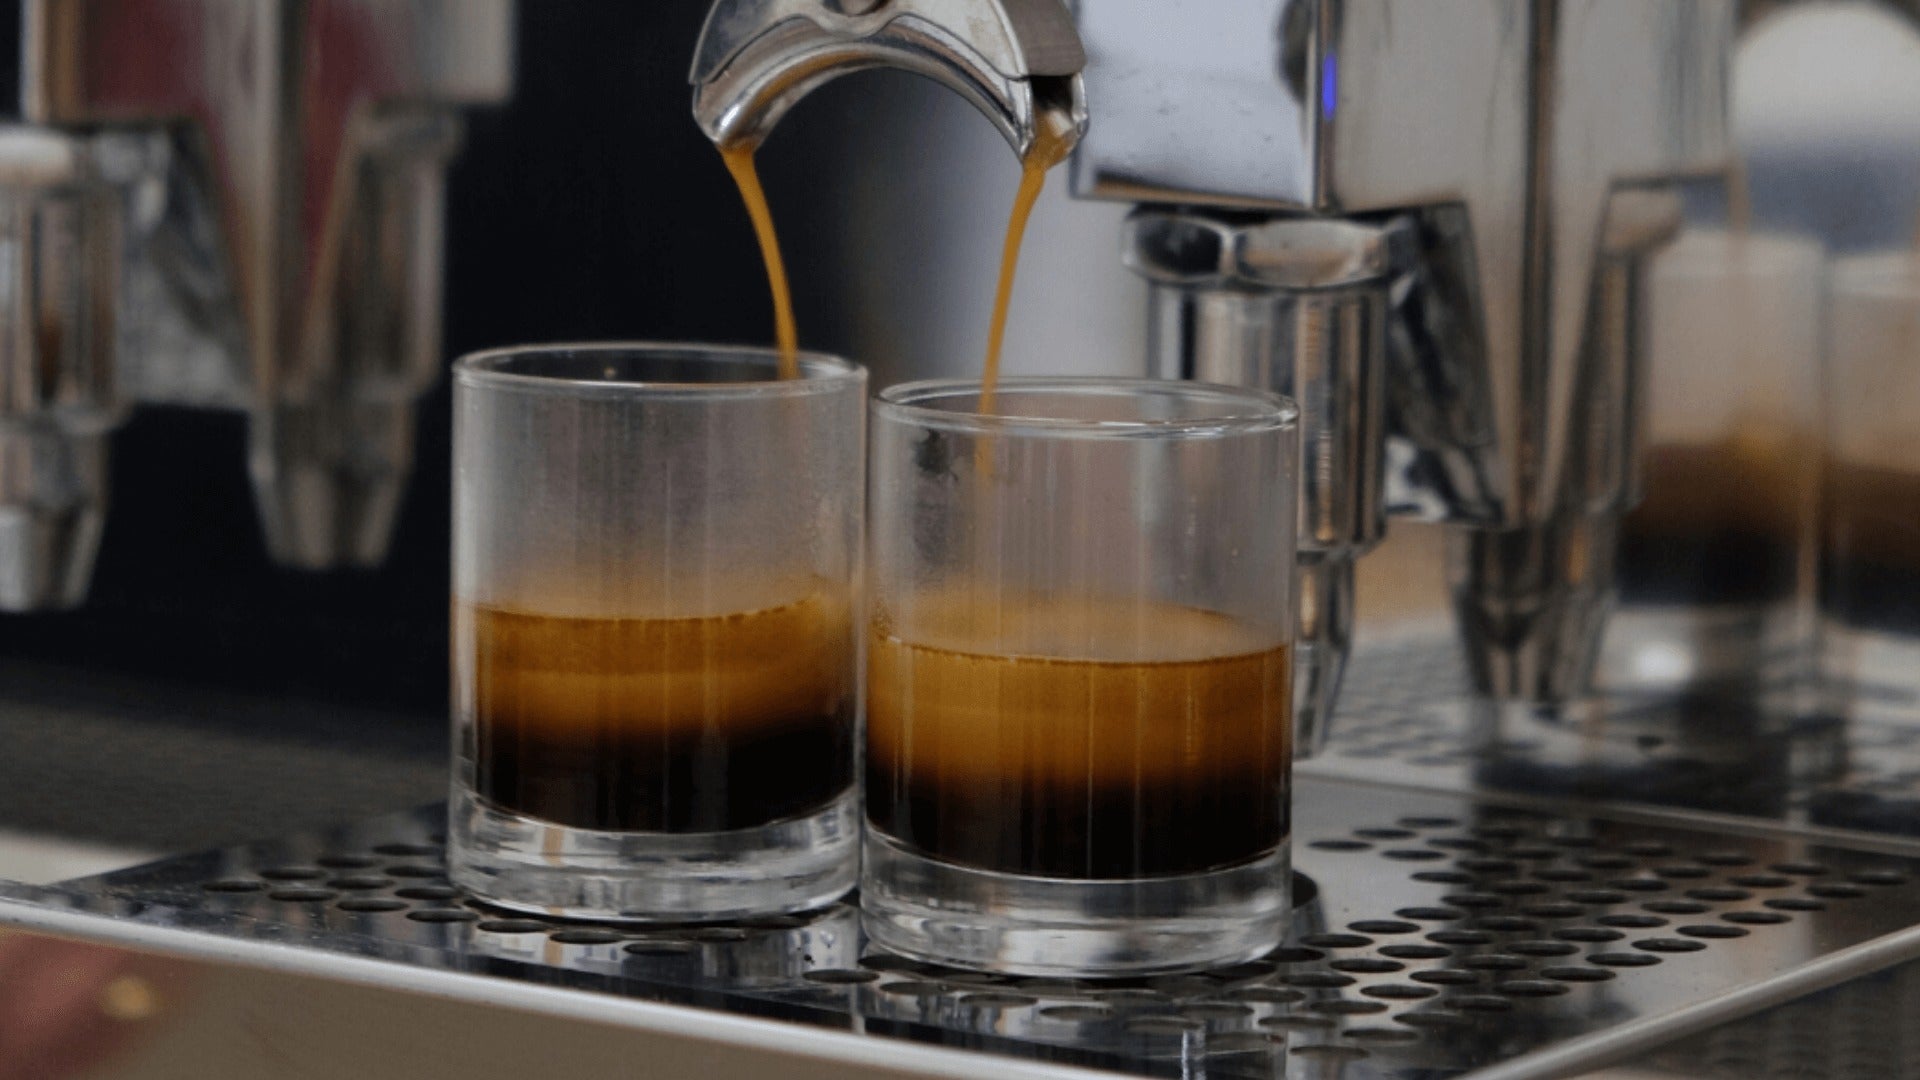 Comment faire un espresso simple court? - Café Barista